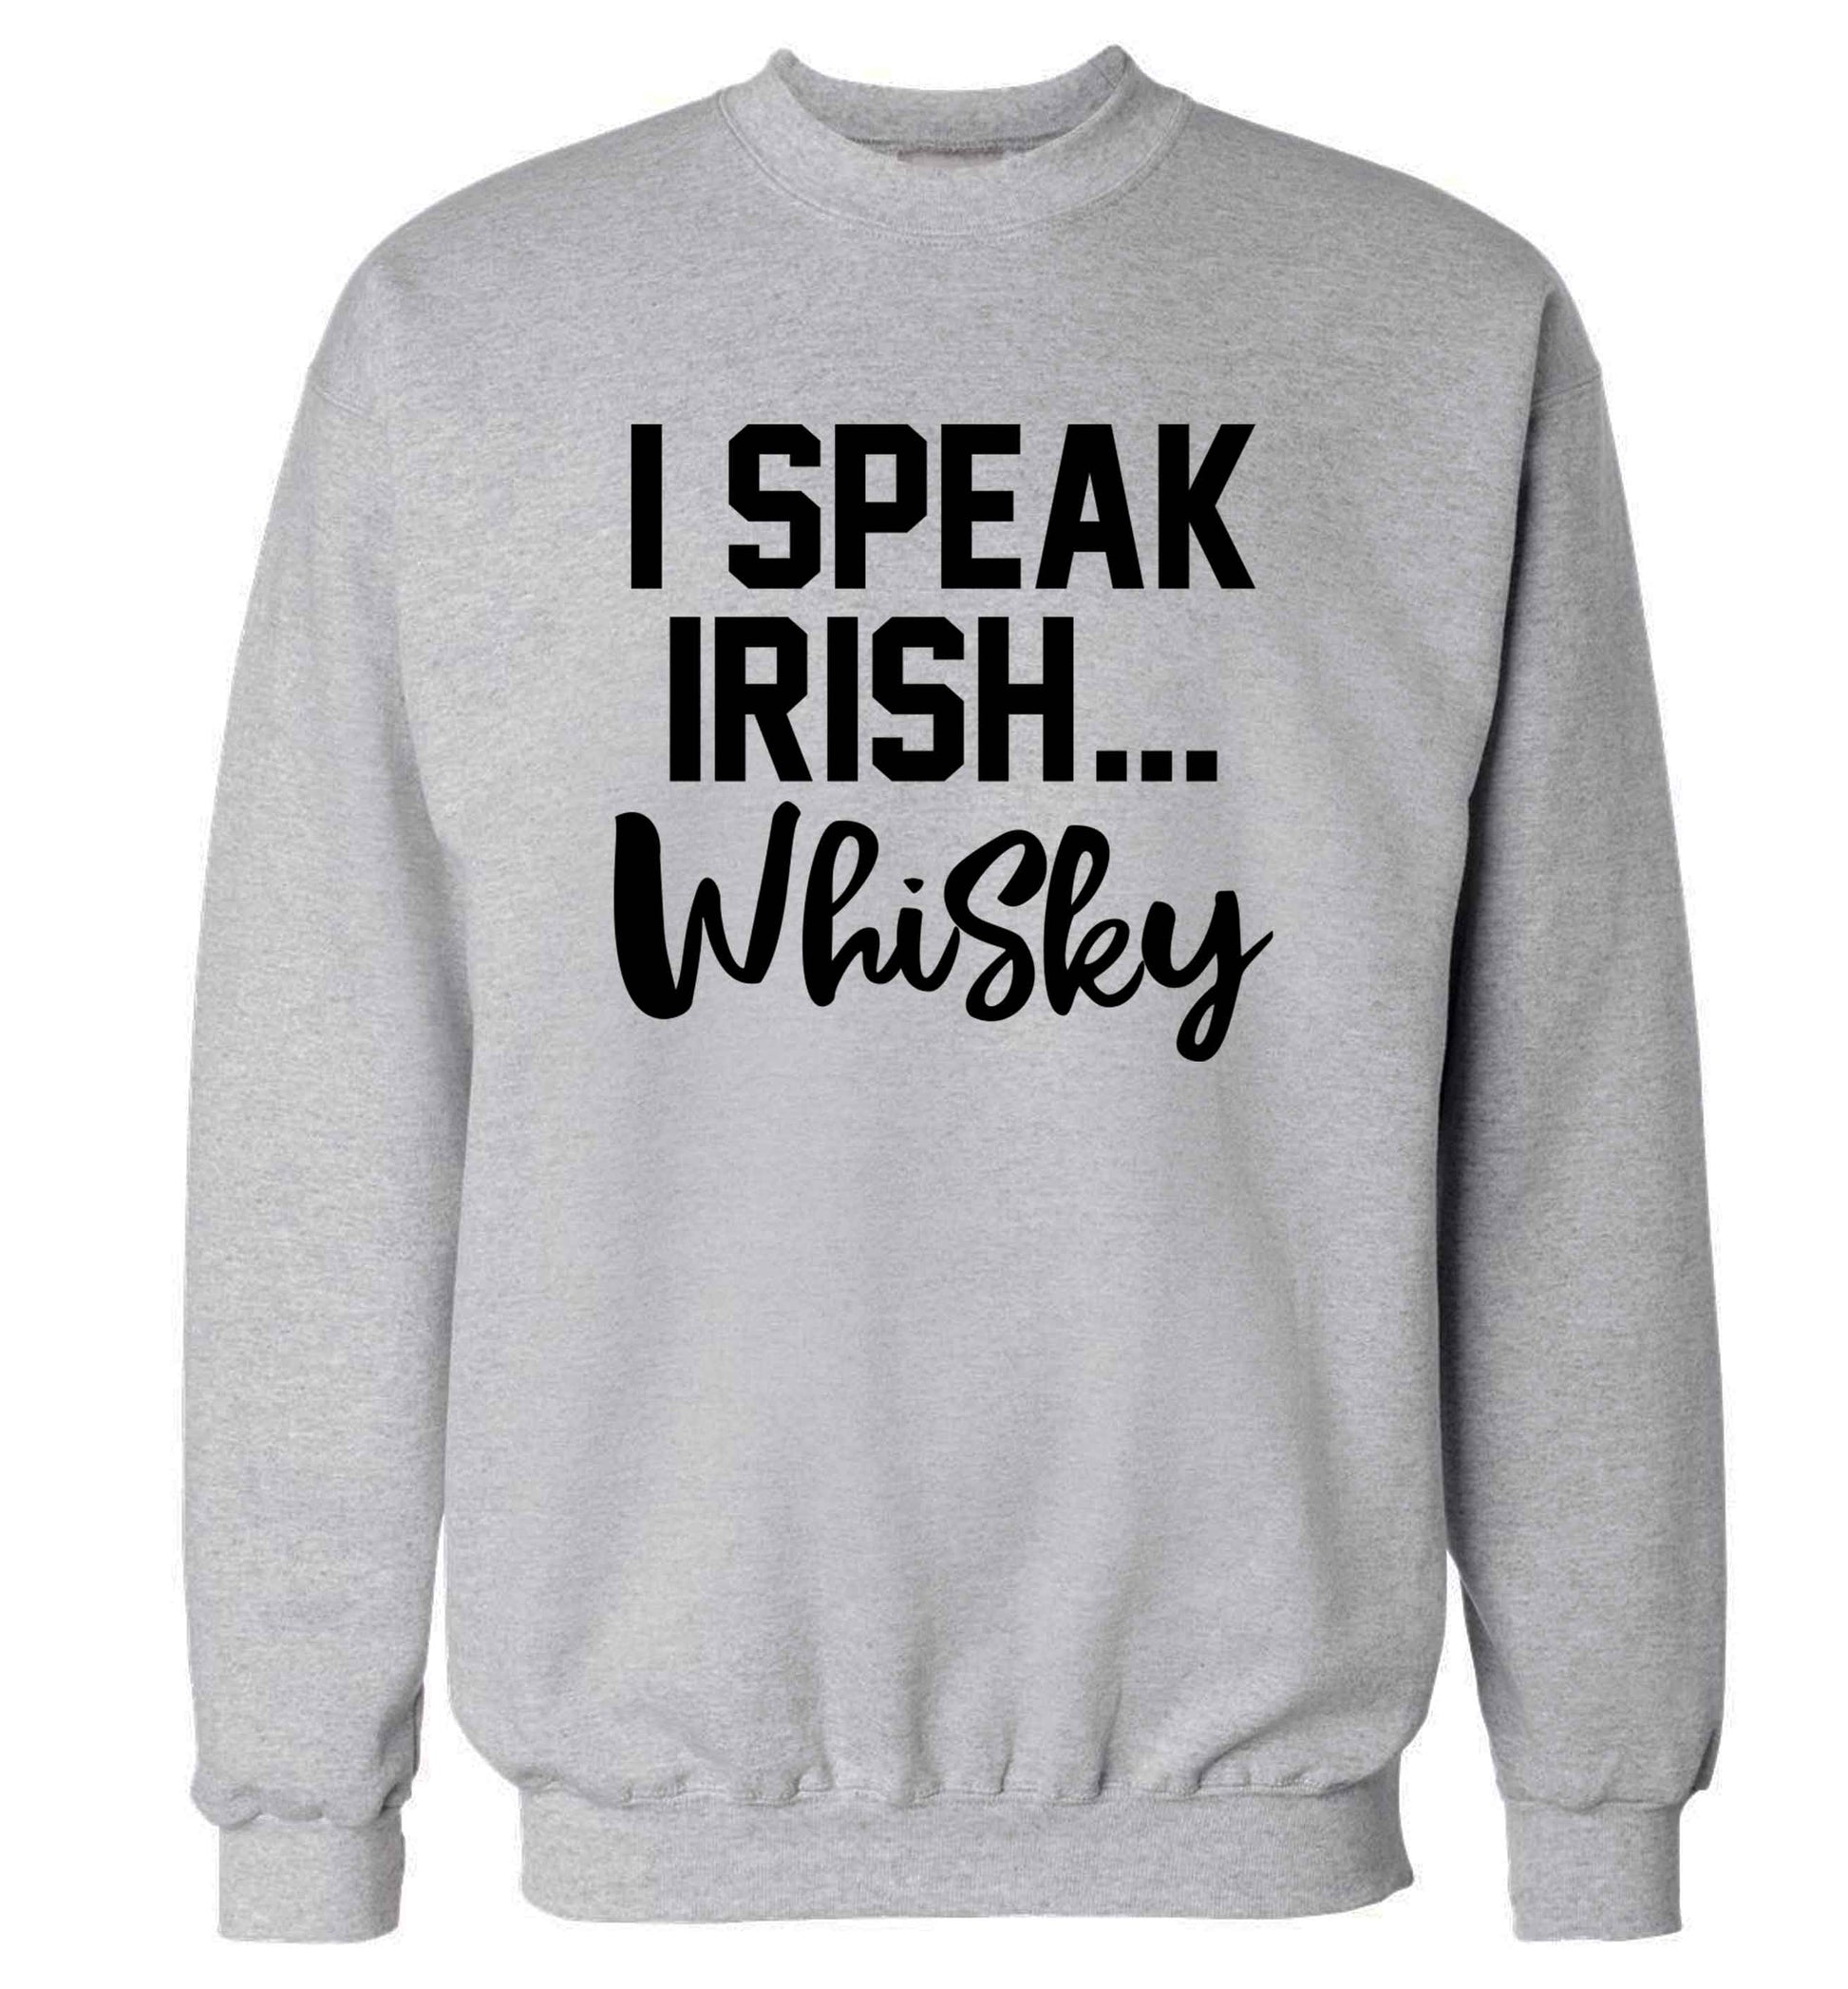 I speak Irish whisky adult's unisex grey sweater 2XL